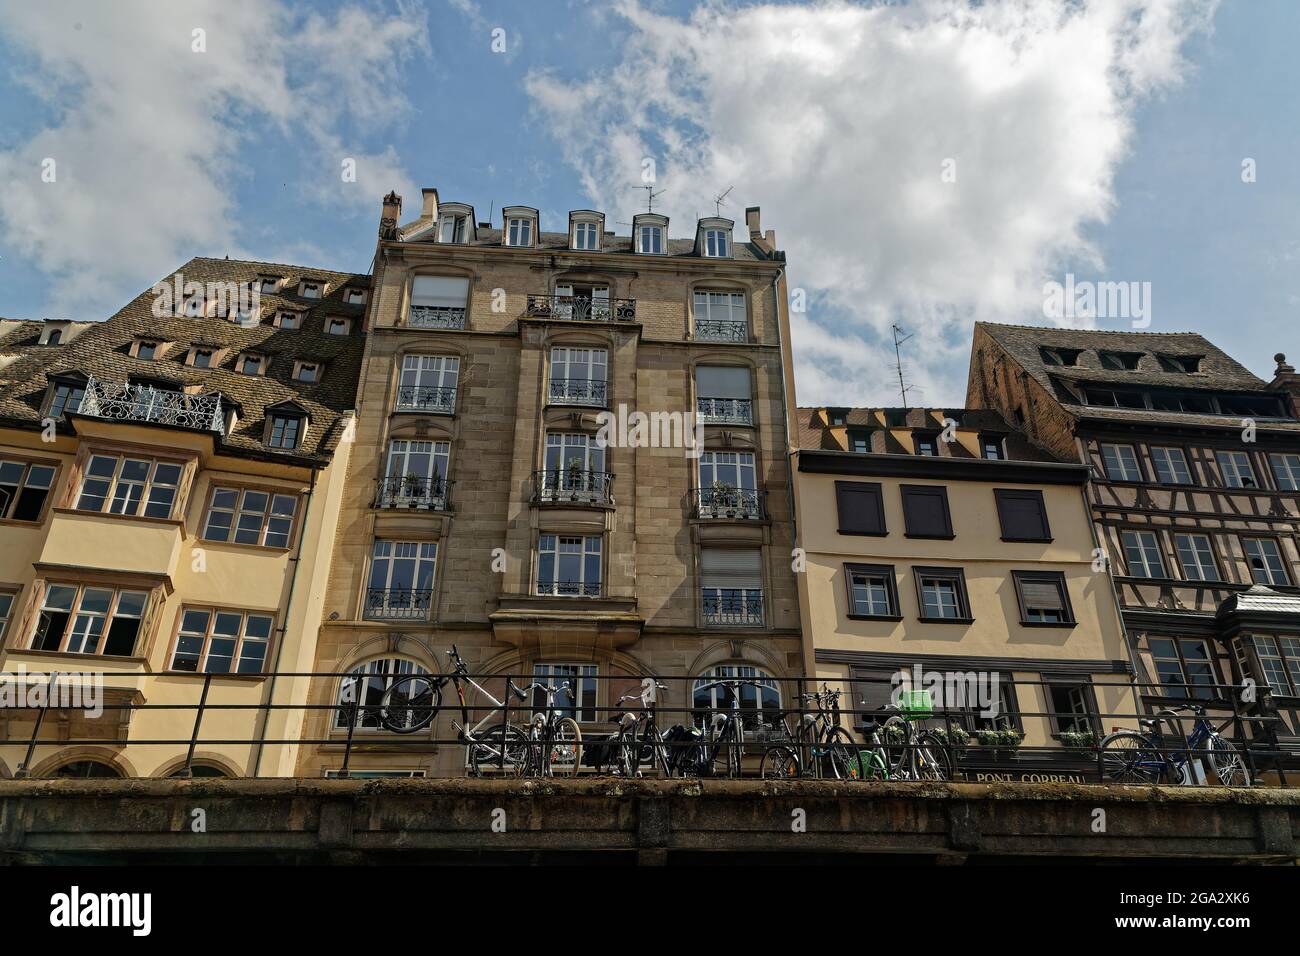 ESTRASBURGO, FRANCIA, 23 de junio de 2021 : Edificios antiguos del centro de la ciudad de Estrasburgo en el muelle del río Ill, visto desde el río. Foto de stock